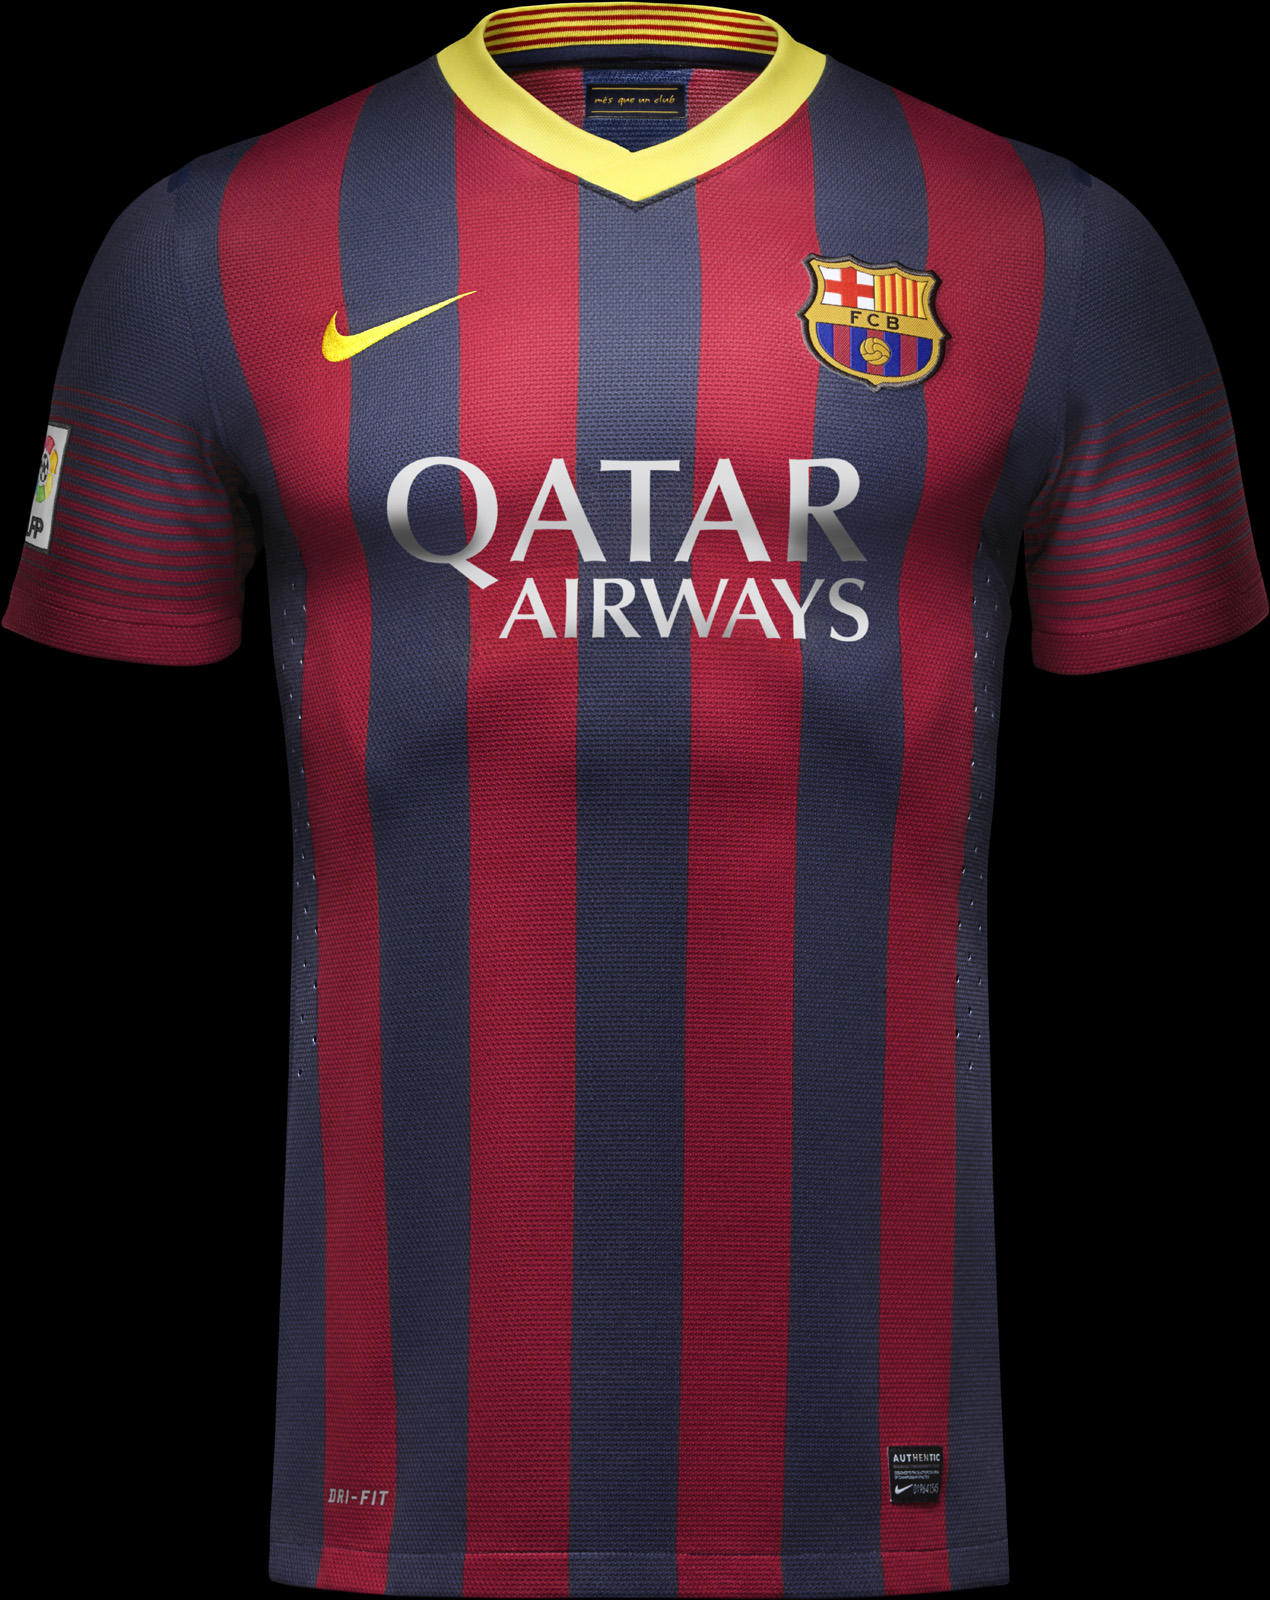 Ontembare werkelijk Vervullen Barcelona thuisshirt 2013/2014 - Voetbalshirts.com